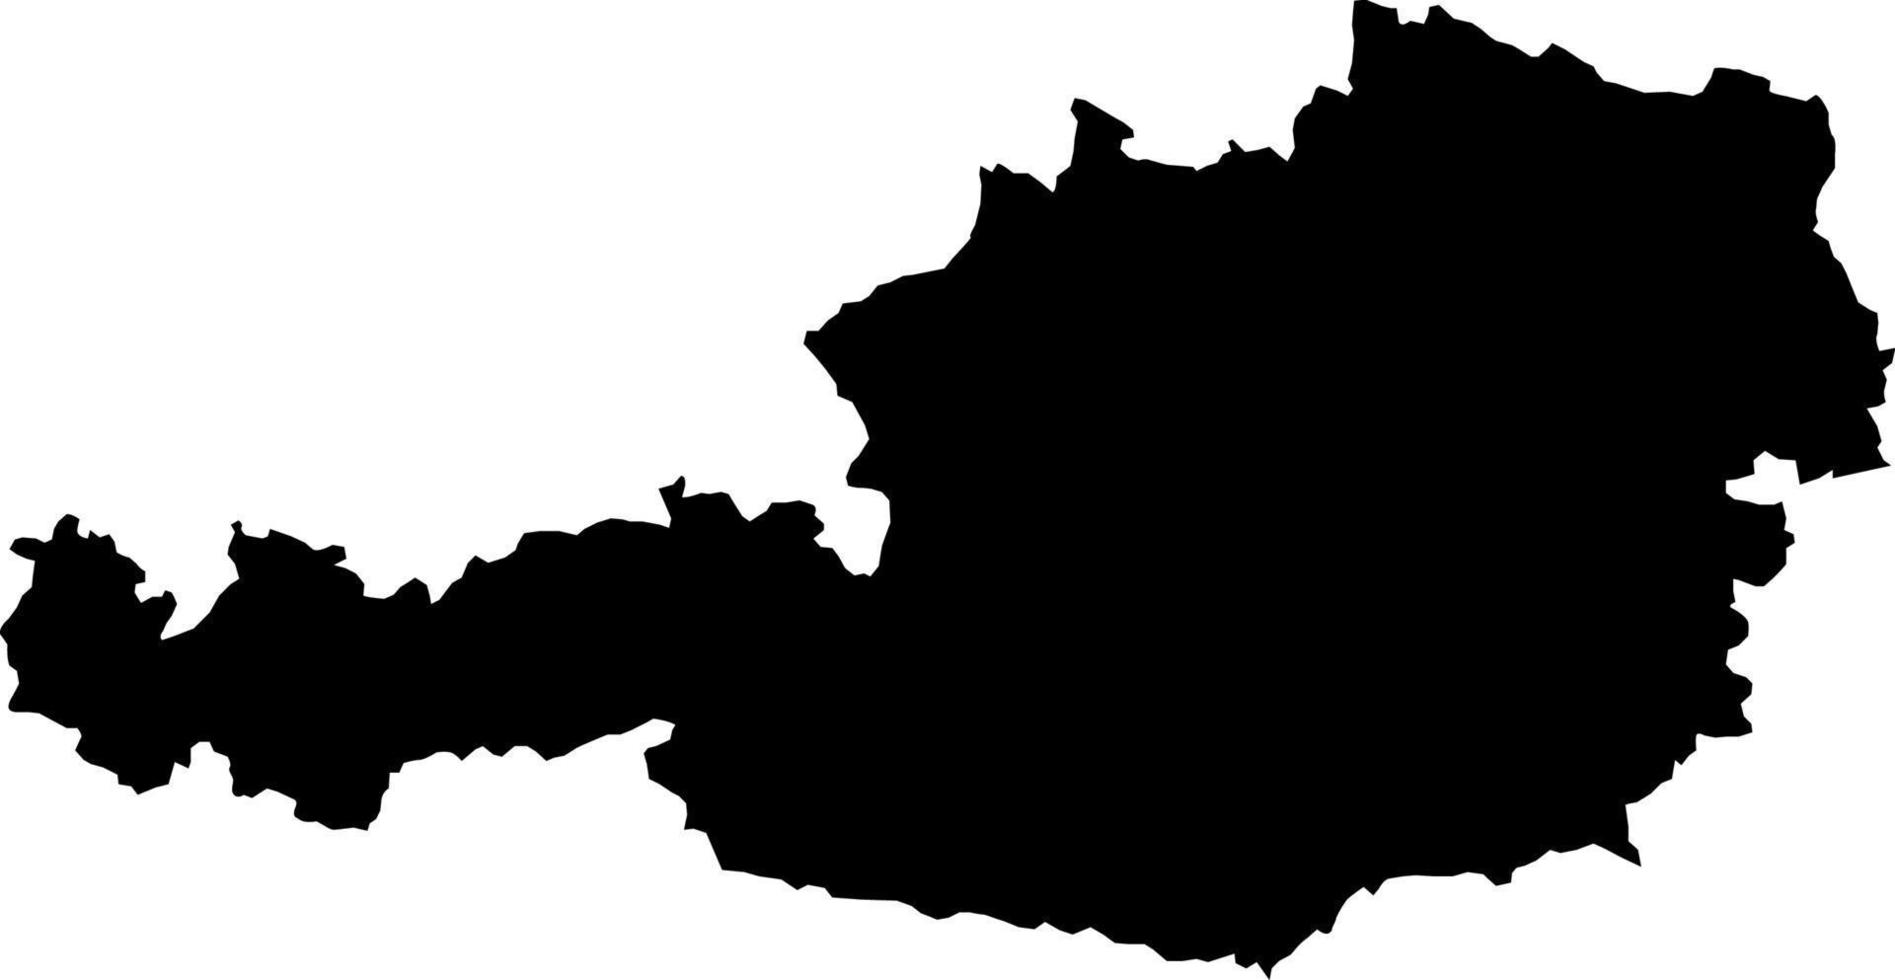 Europa Austria mapa vector mapa.mano dibujado minimalismo estilo.